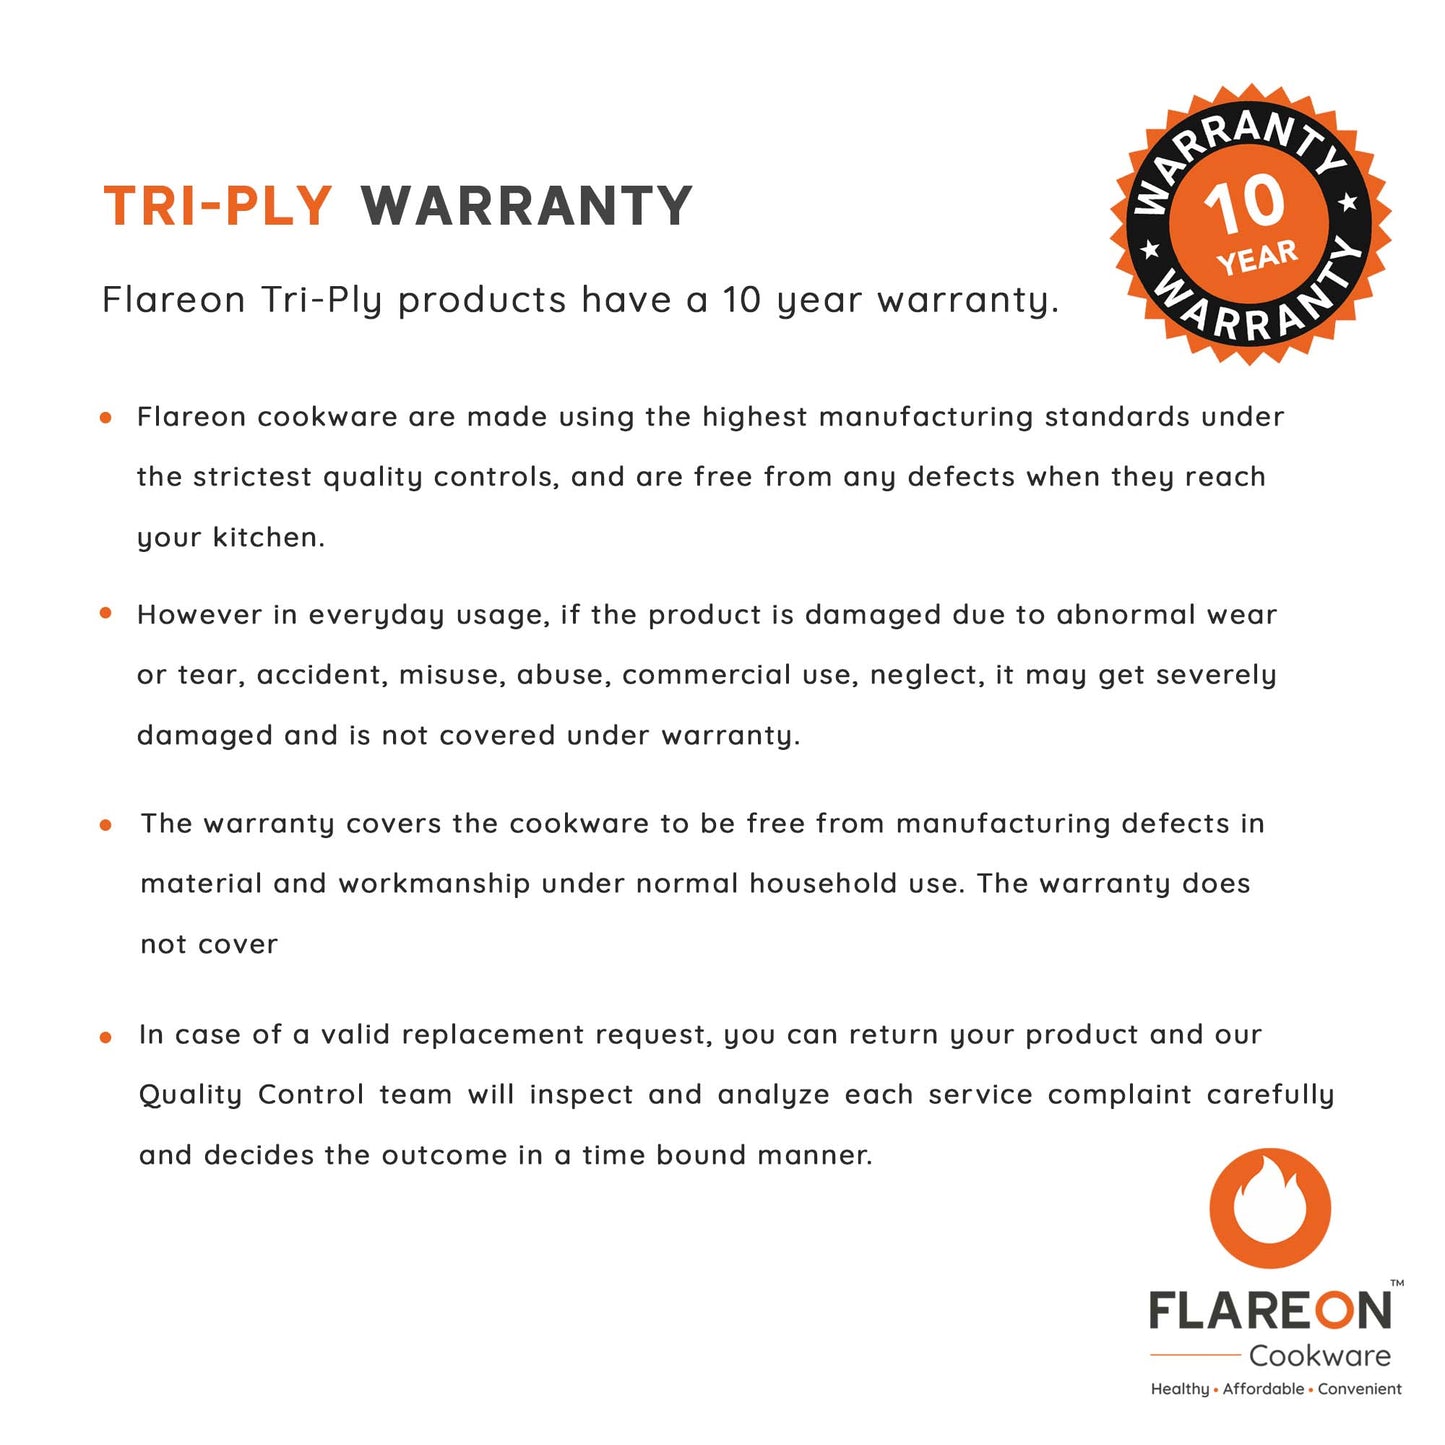 FlareOn's Tri-Ply Warranty